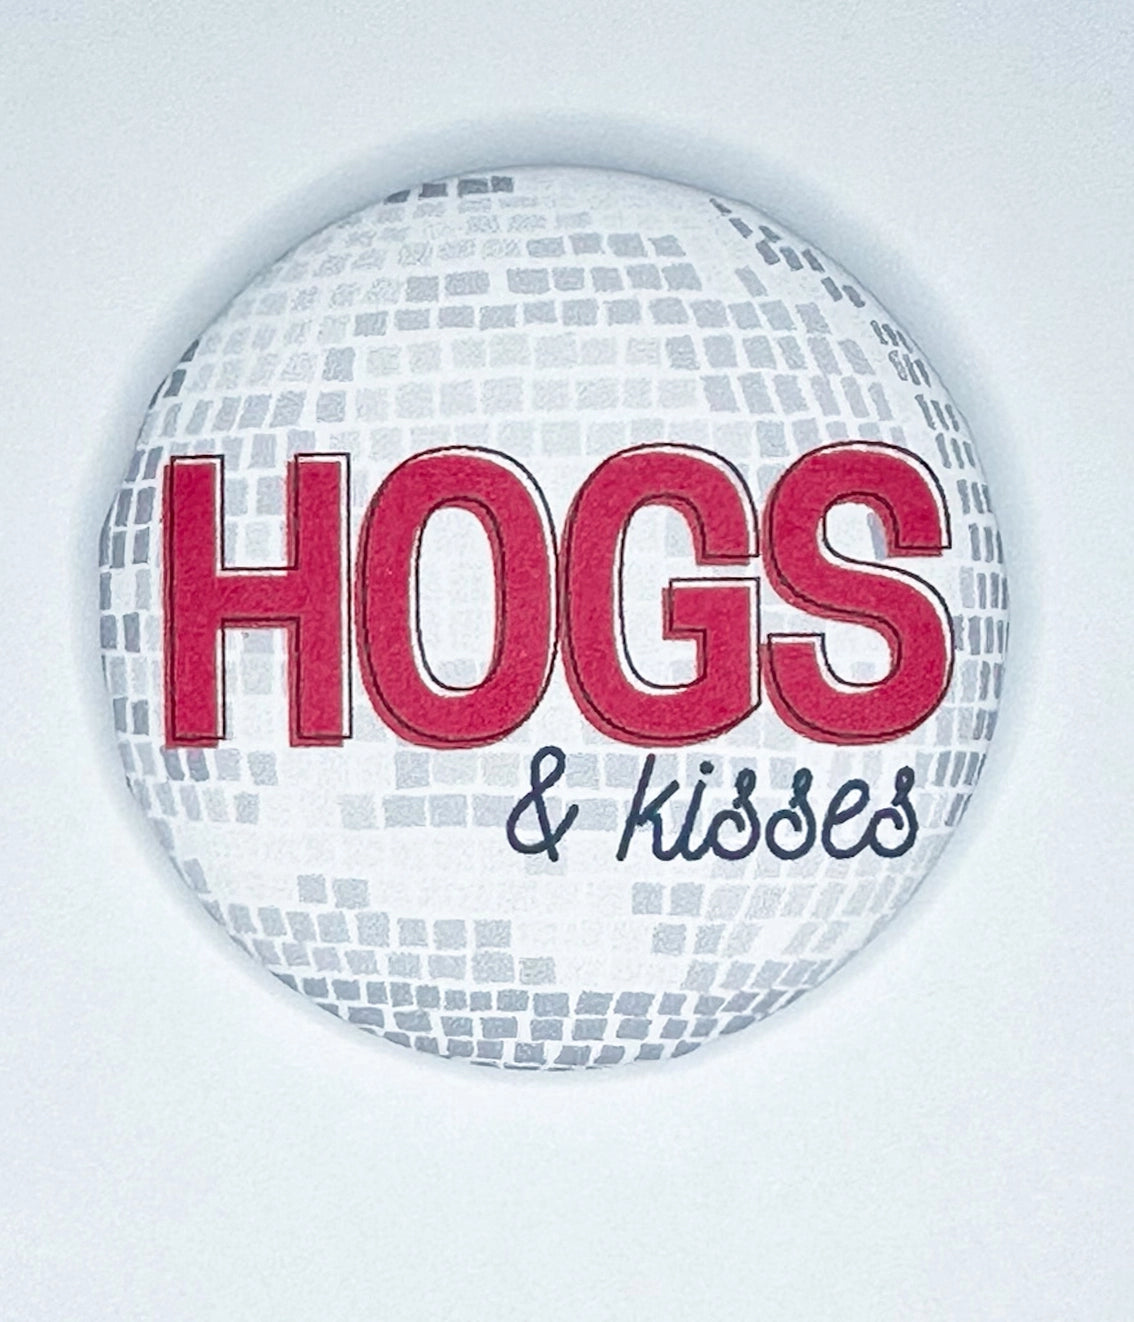 Hogs & Kisses Button